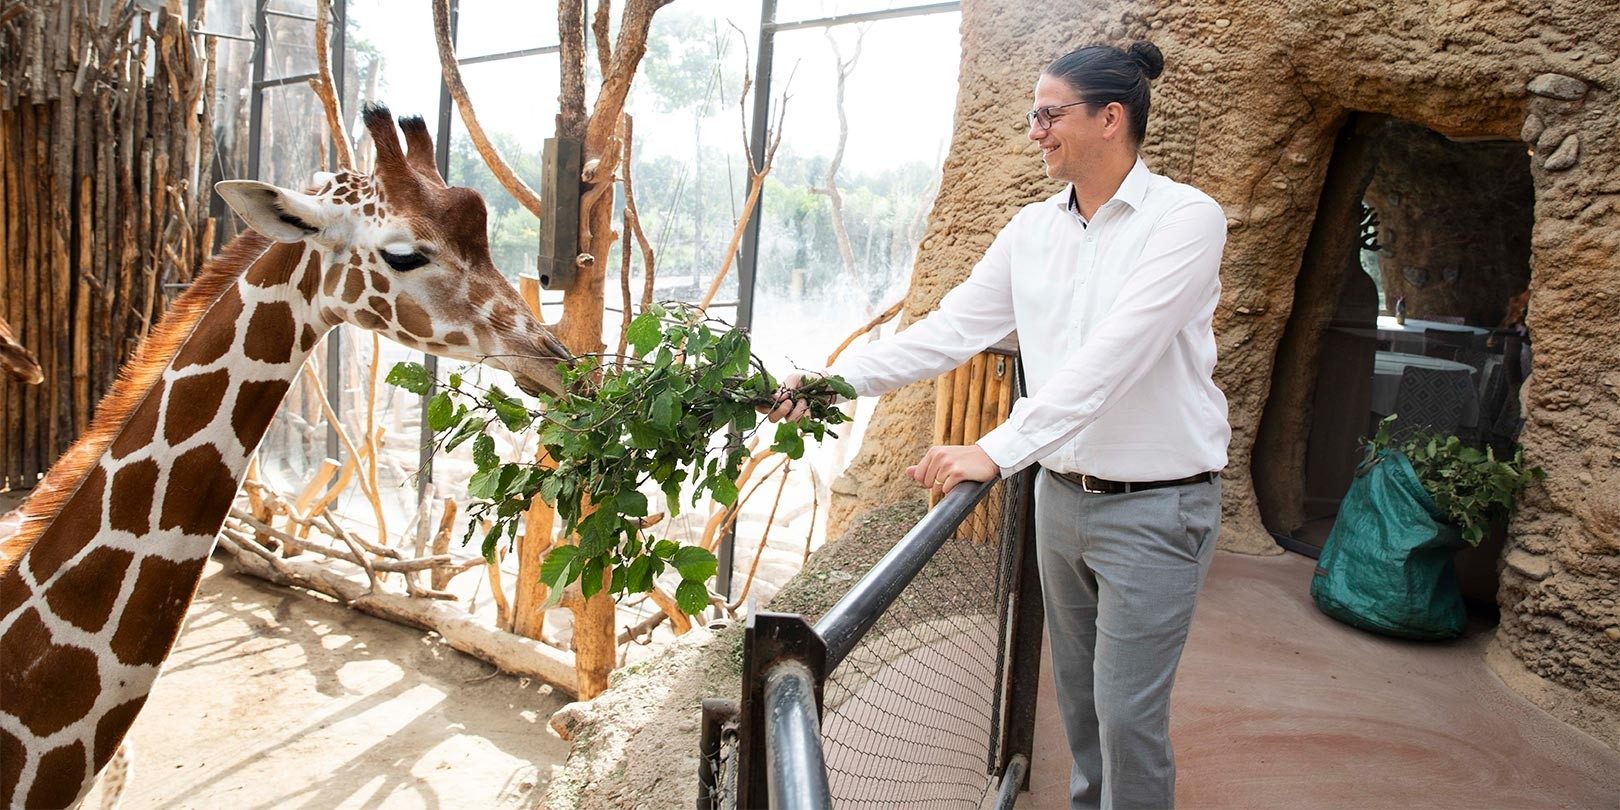 Uomo con gli occhiali dà da mangiare a una giraffa